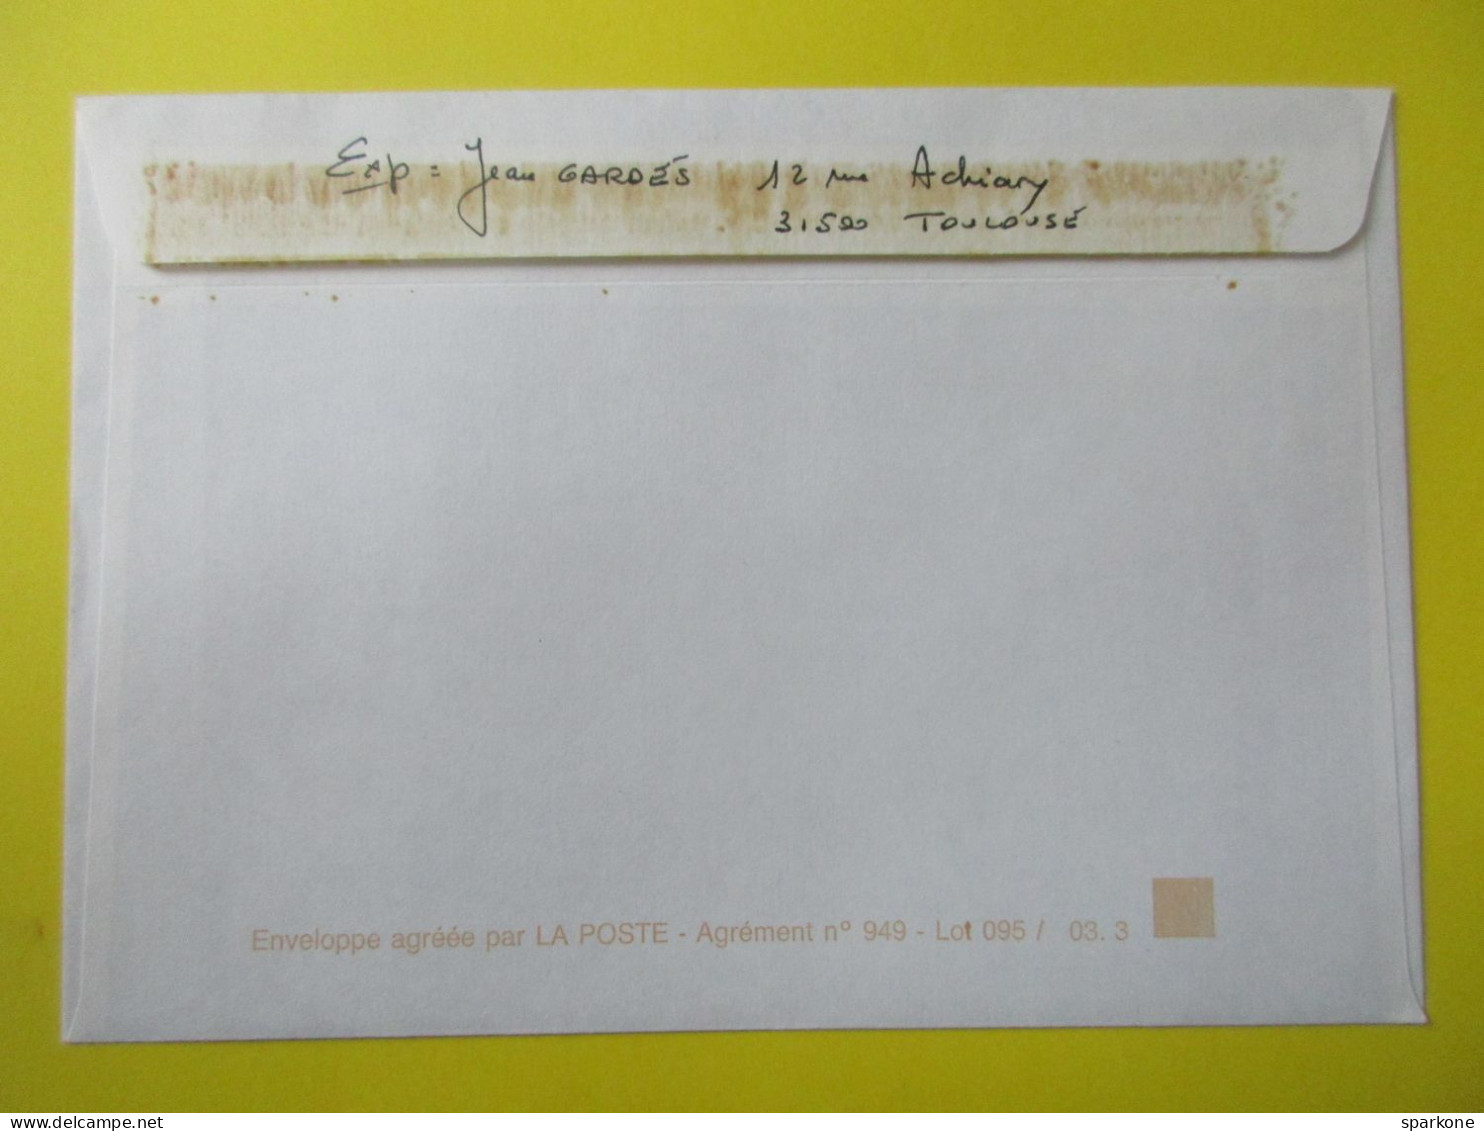 Marcophilie - Enveloppe - France - Cachet Commémoratif - Marianne De Dulac - Journée Du Timbre - 1994 - 33 Floirac - Commemorative Postmarks